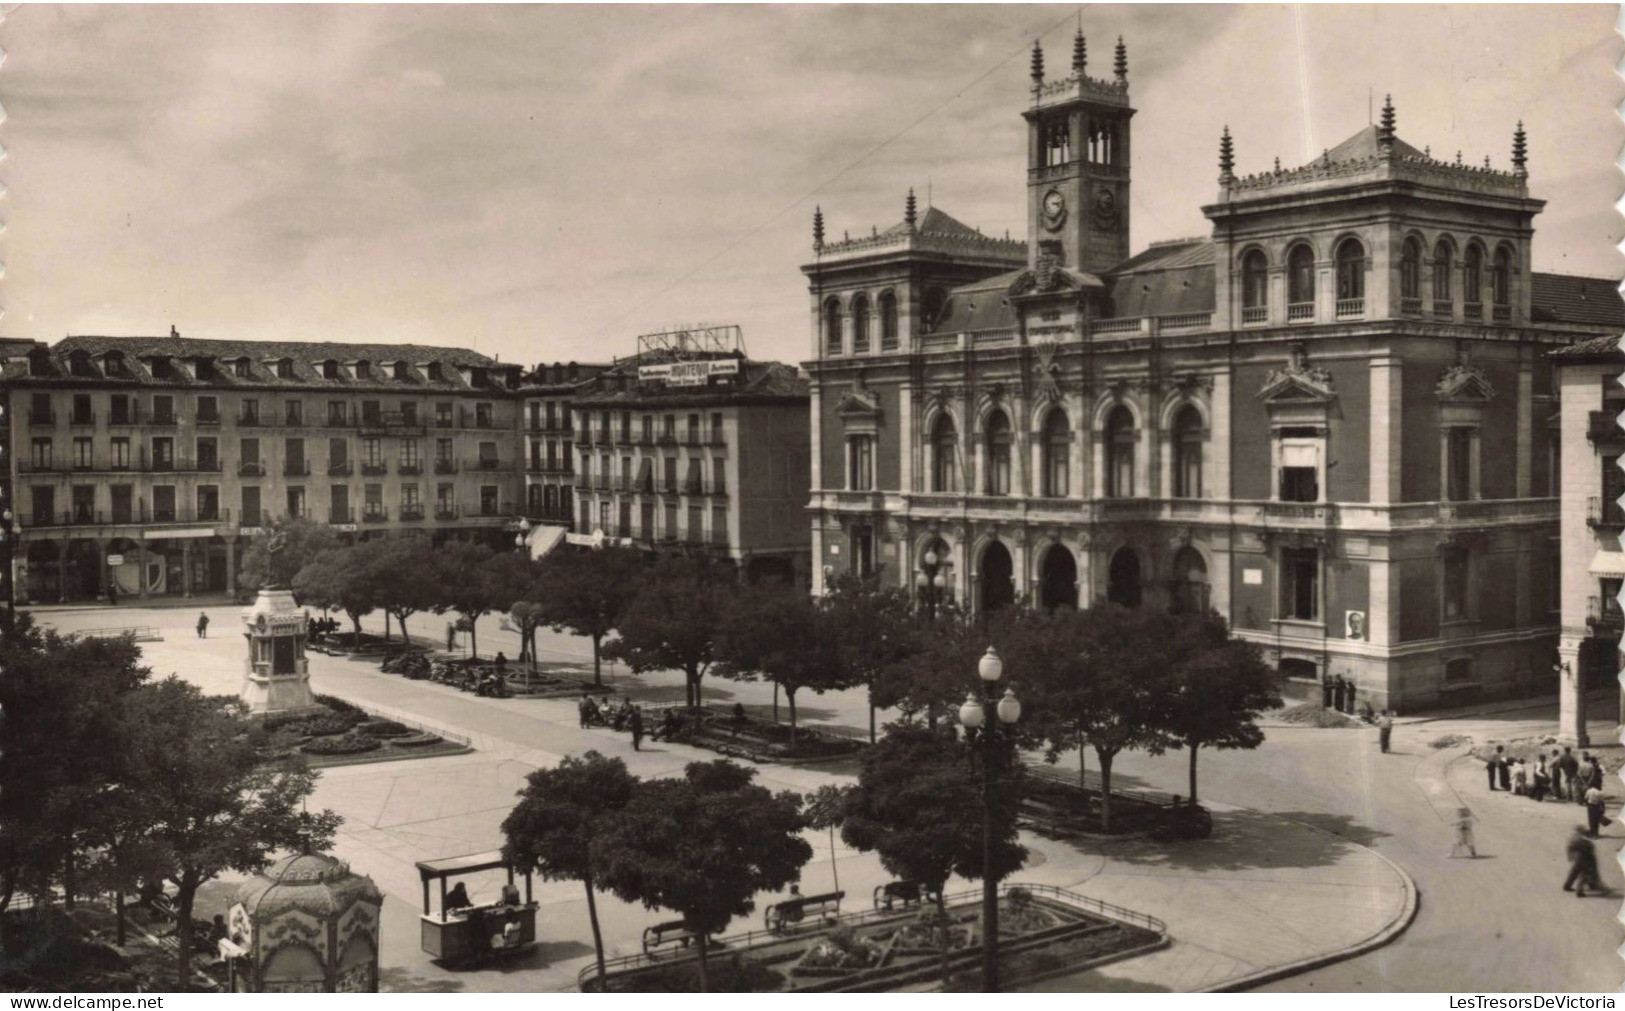 ESPAGNE - Valladolid - Place Mayor - Carte Postale Ancienne - Valladolid